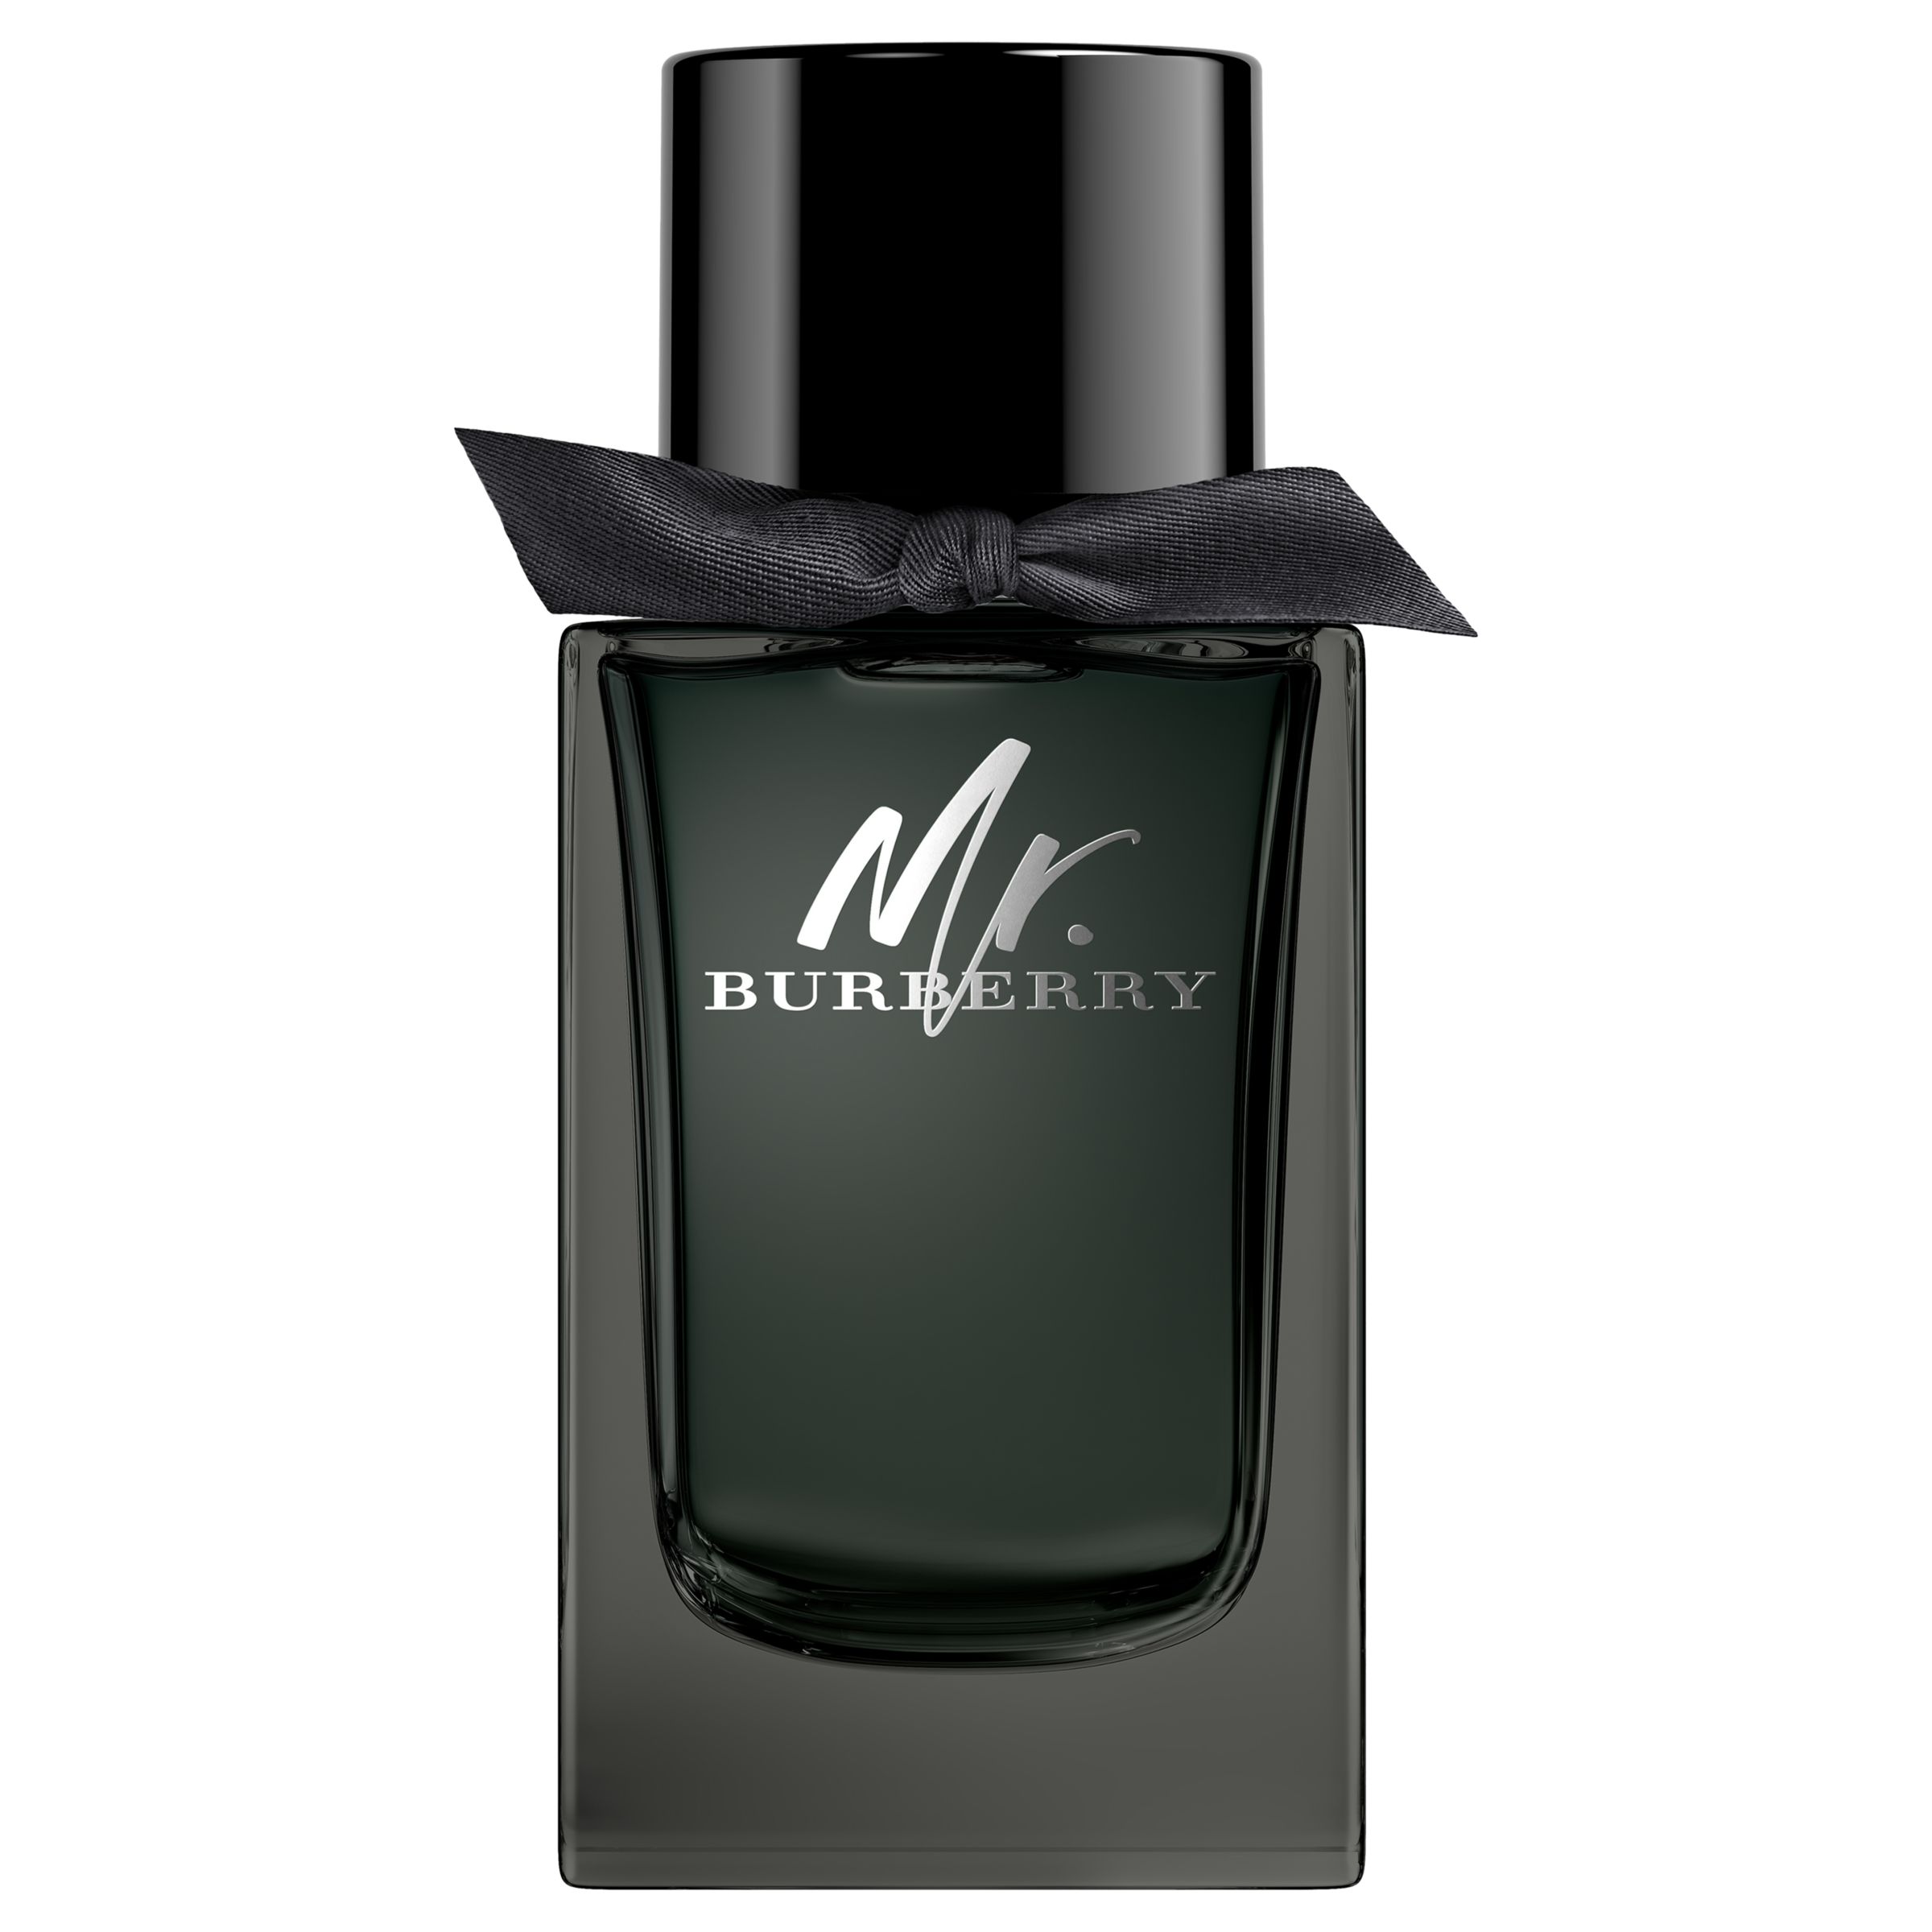 Burberry Mr. Burberry Eau de Parfum at 